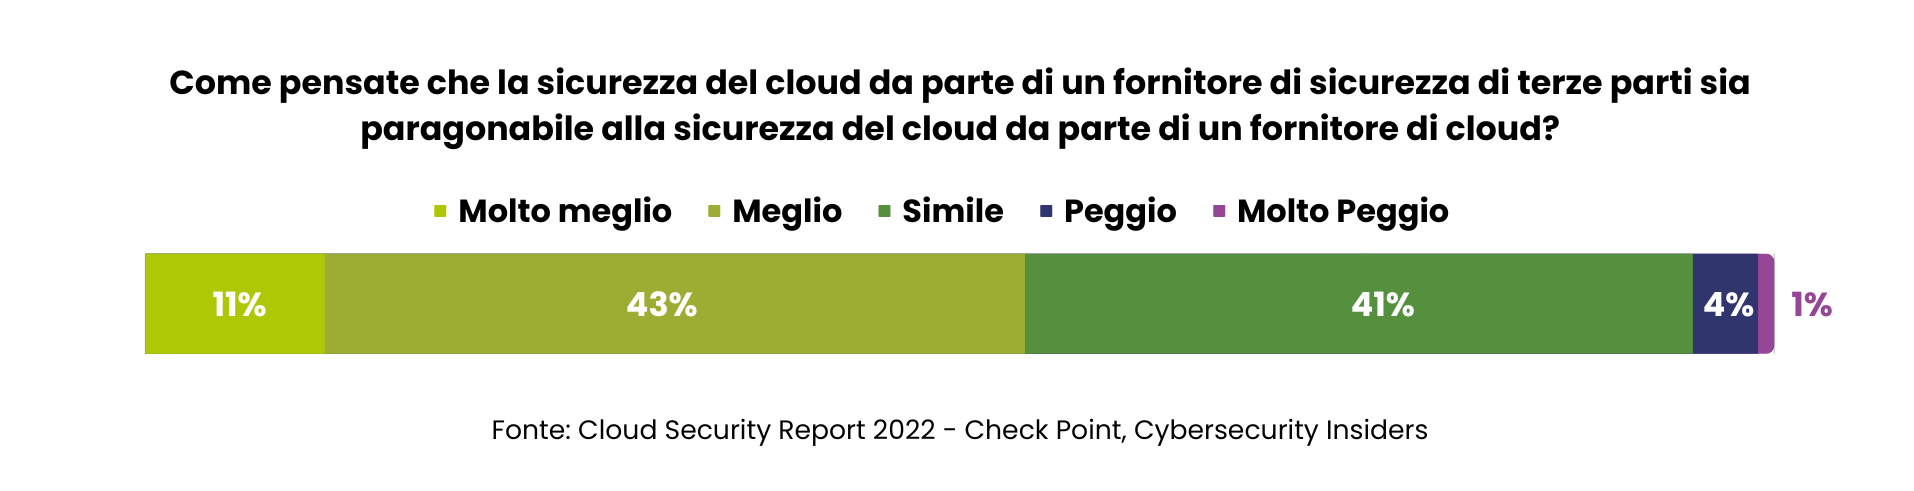 Survey_Cloud Security_Check Point